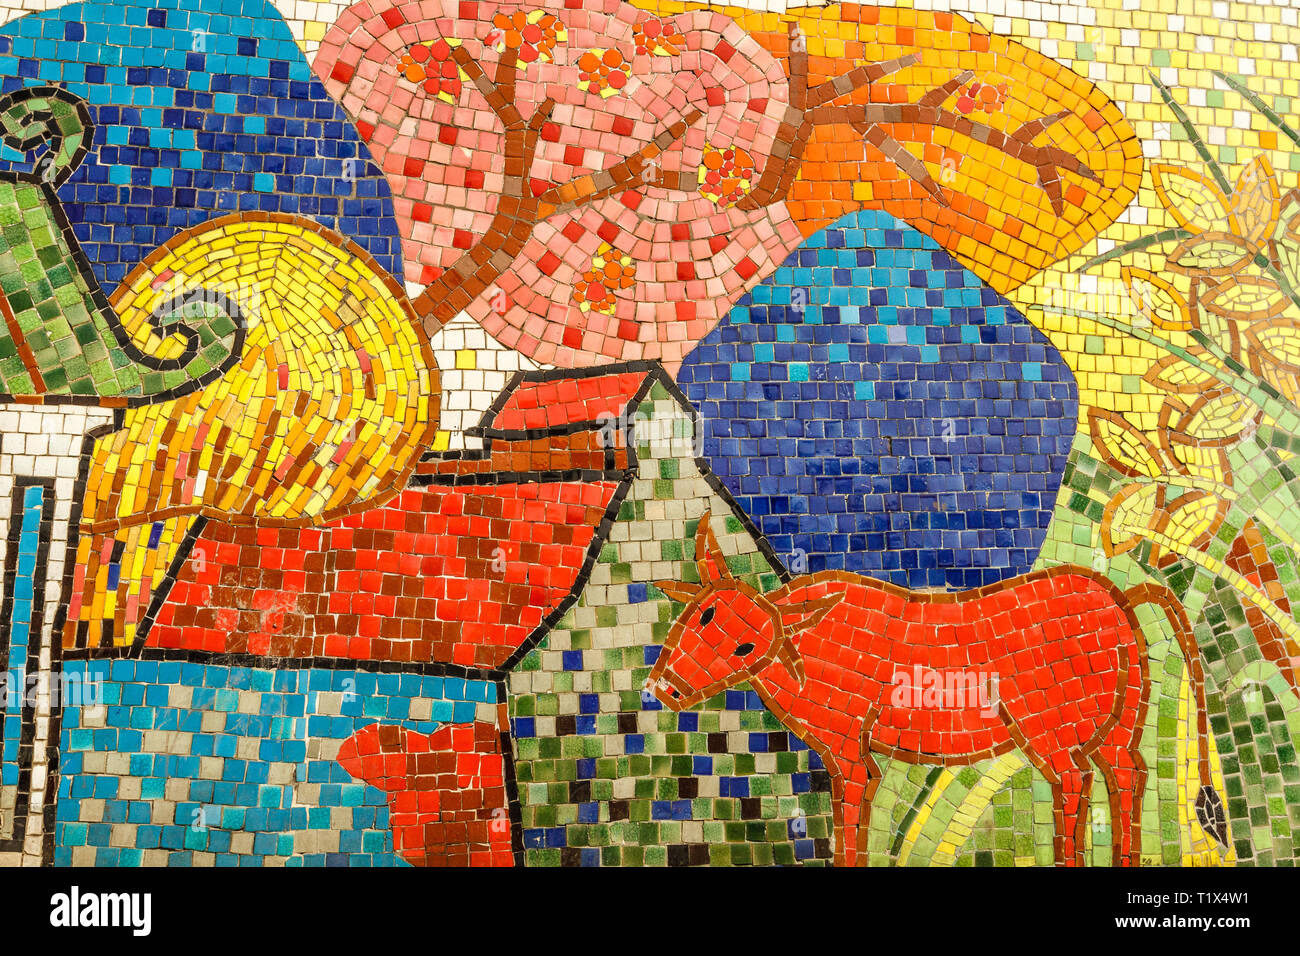 Hanoi Keramik Mosaik Wandbild oder Hanoi Keramik Straße. Vietnam. Darstellung von Windmühlen. Die längste Keramische Wand in der Welt, Guinness Rekord. Stockfoto